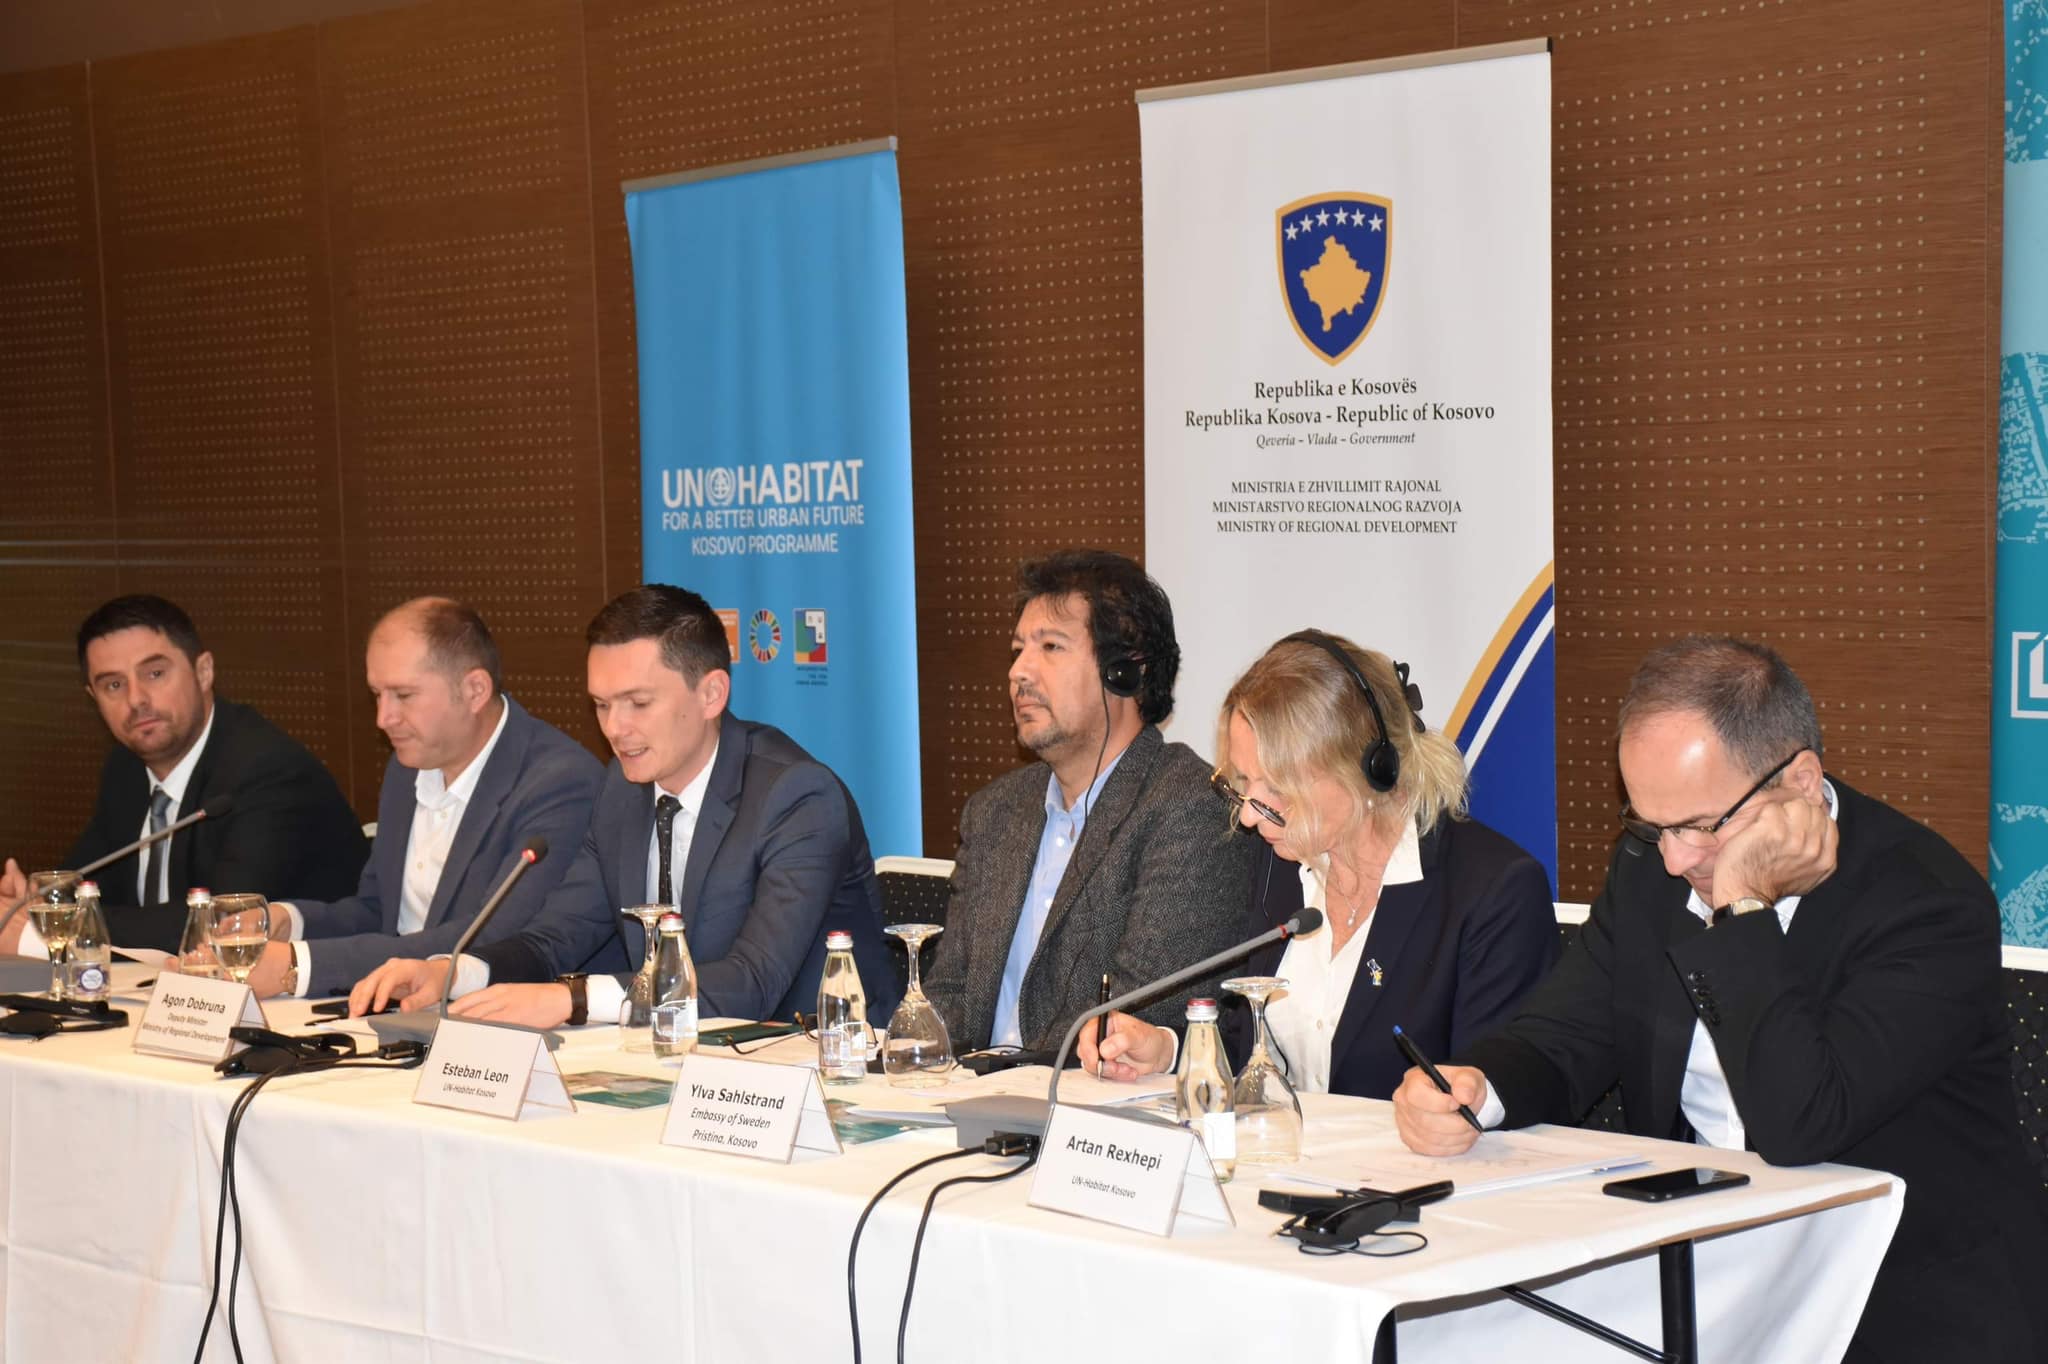 Ministria e Zhvillimit Rajonal (MZHR) në partneritet me UN-Habitat Kosovë mbajnë Punëtorinë -  Prezantimi dhe validimi i draft-analizës së investimeve kapitale të realizuara sipas rajoneve zhvillimore të kosovës për vitin 2021